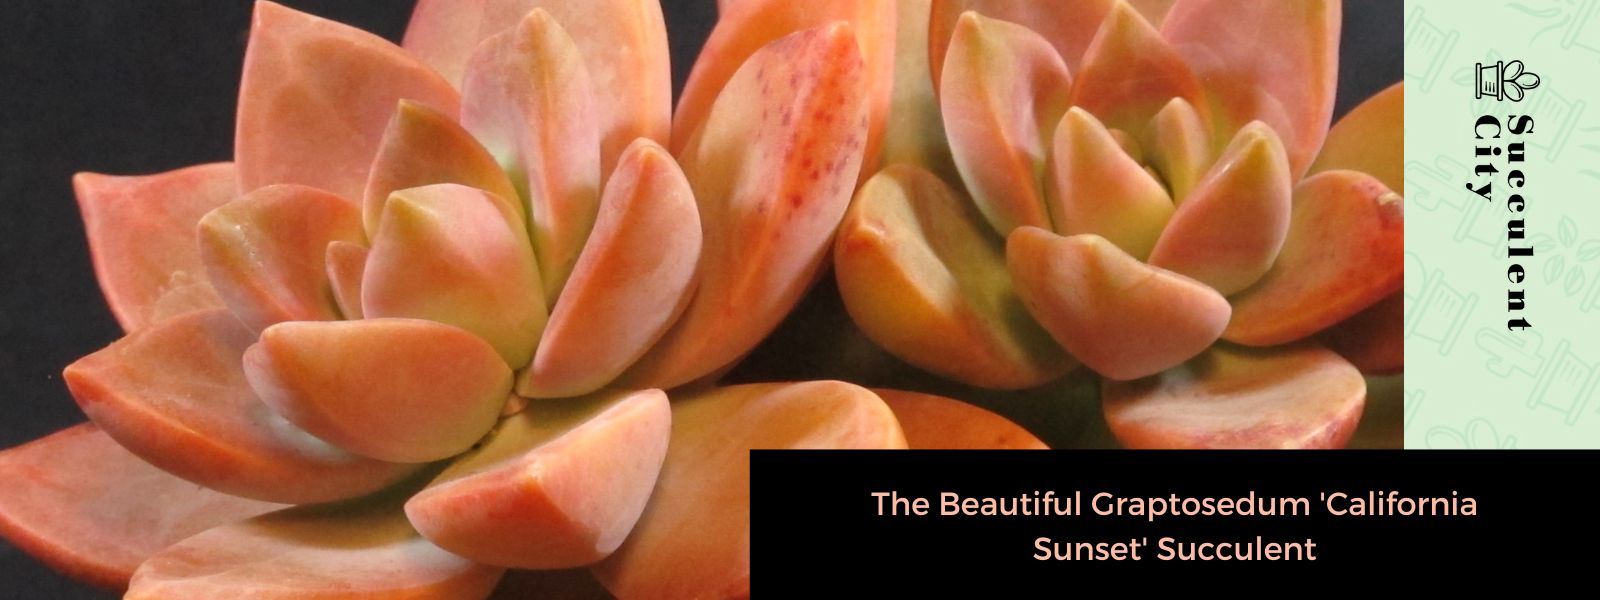 La hermosa suculenta Graptosedum “California Sunset”.